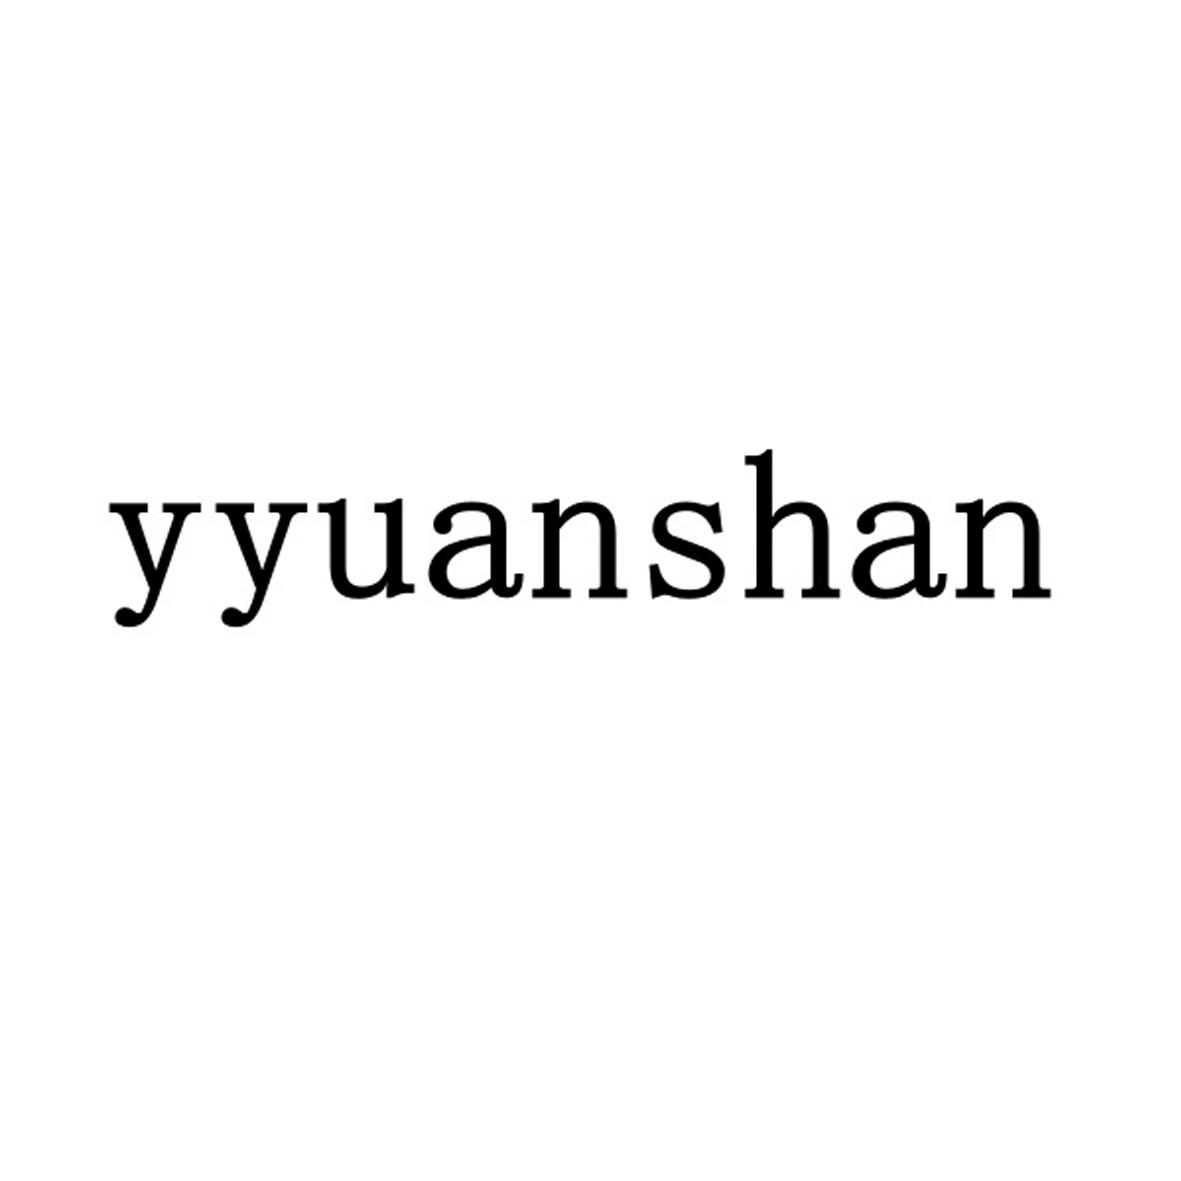 YYUANSHAN